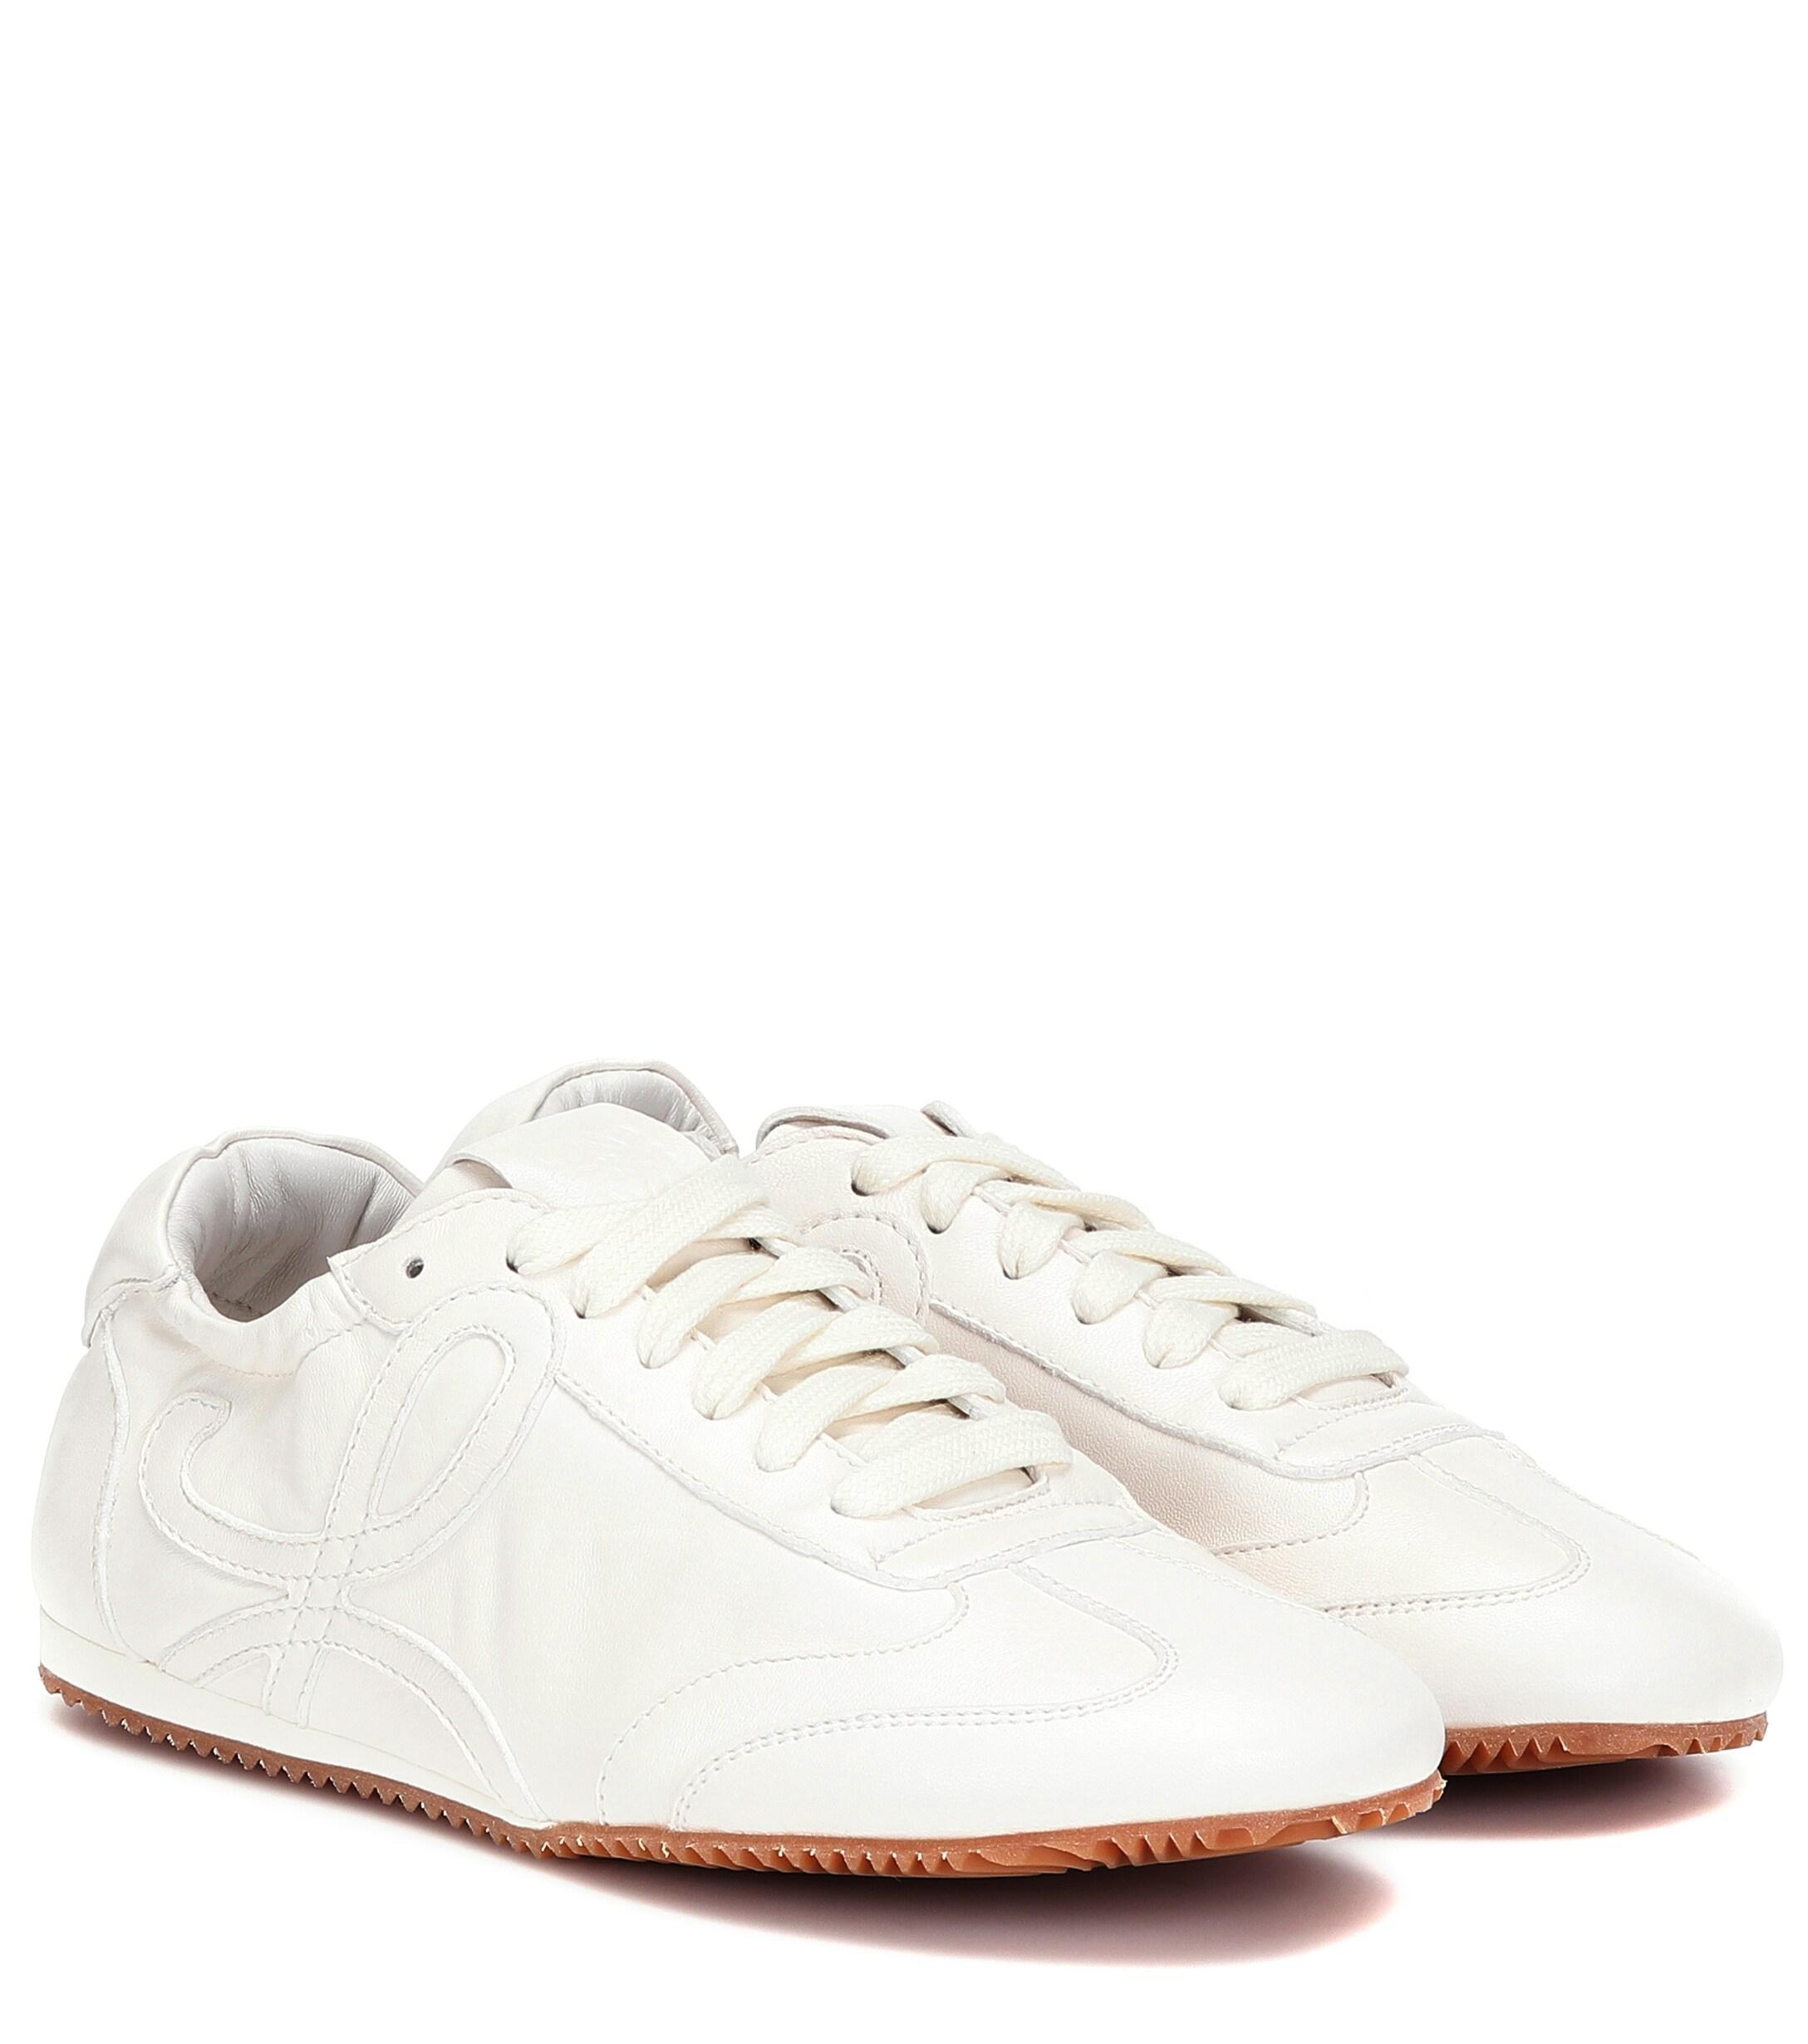 Loewe Ballet Runner Leather Sneakers in White - Lyst